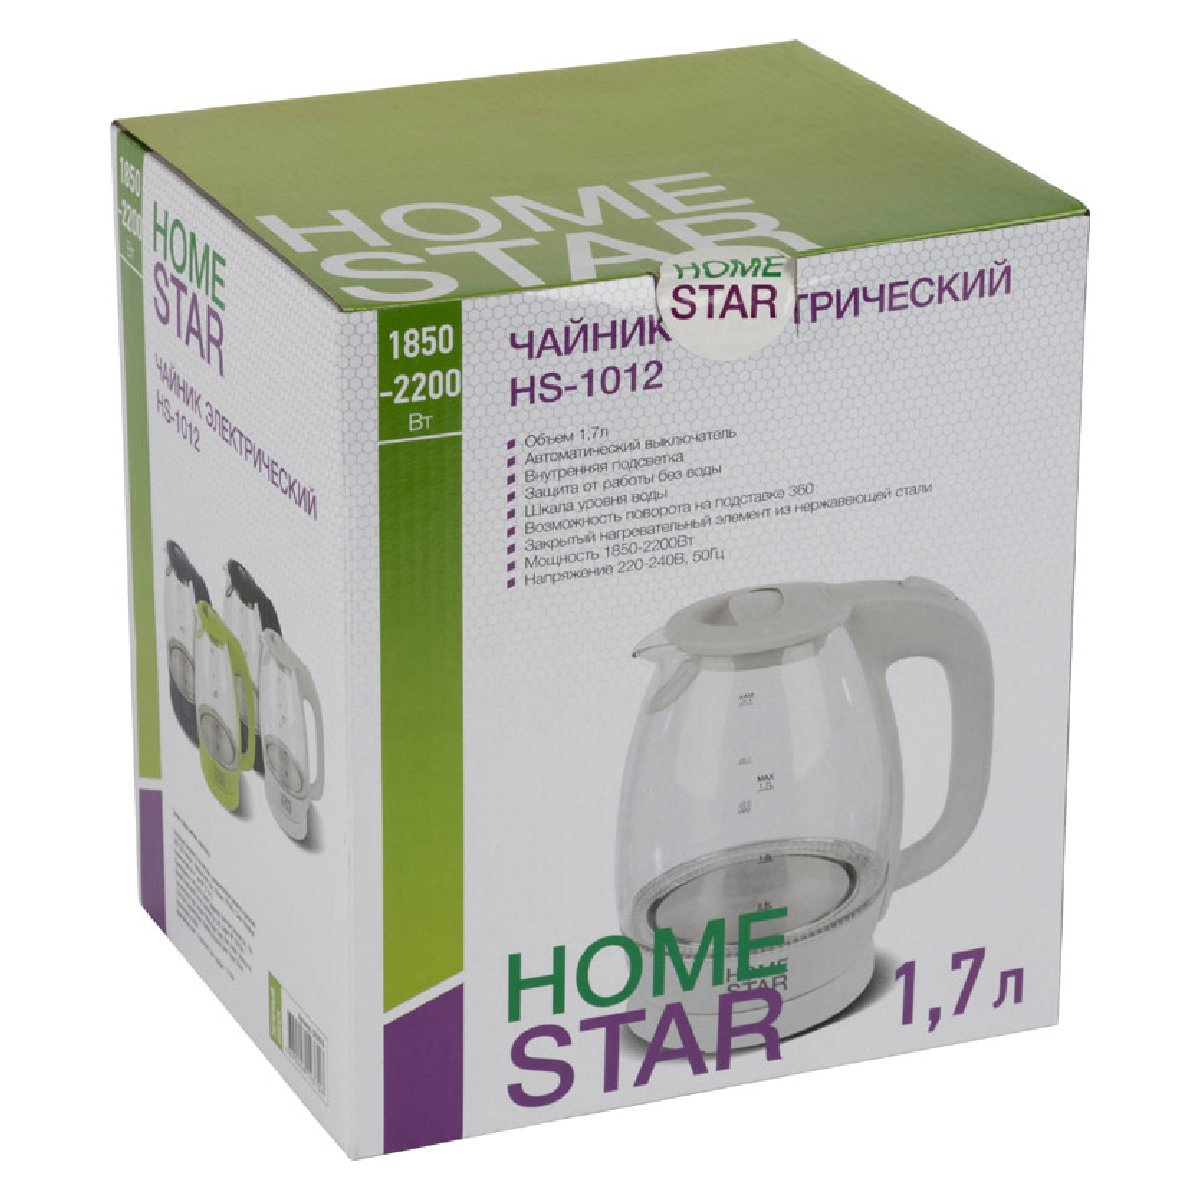 Чайник Homestar HS-1012 (1,7 л) стекло, пластик (003943)